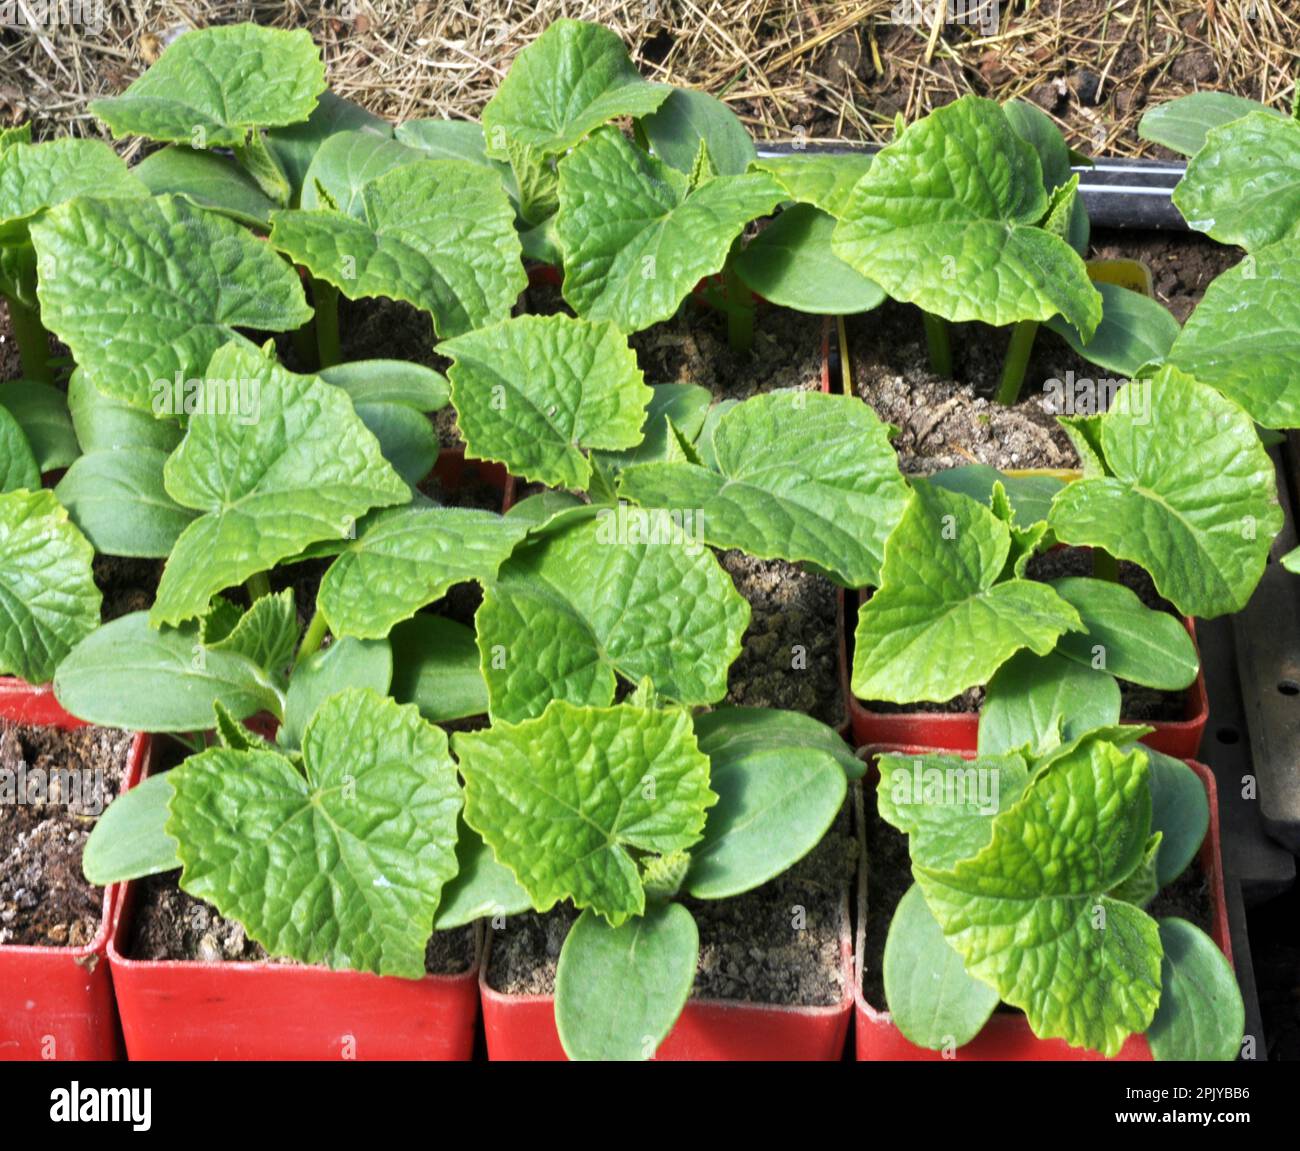 Giovani pianta crescente di cetrioli in pentole di plastica con suolo organico Foto Stock